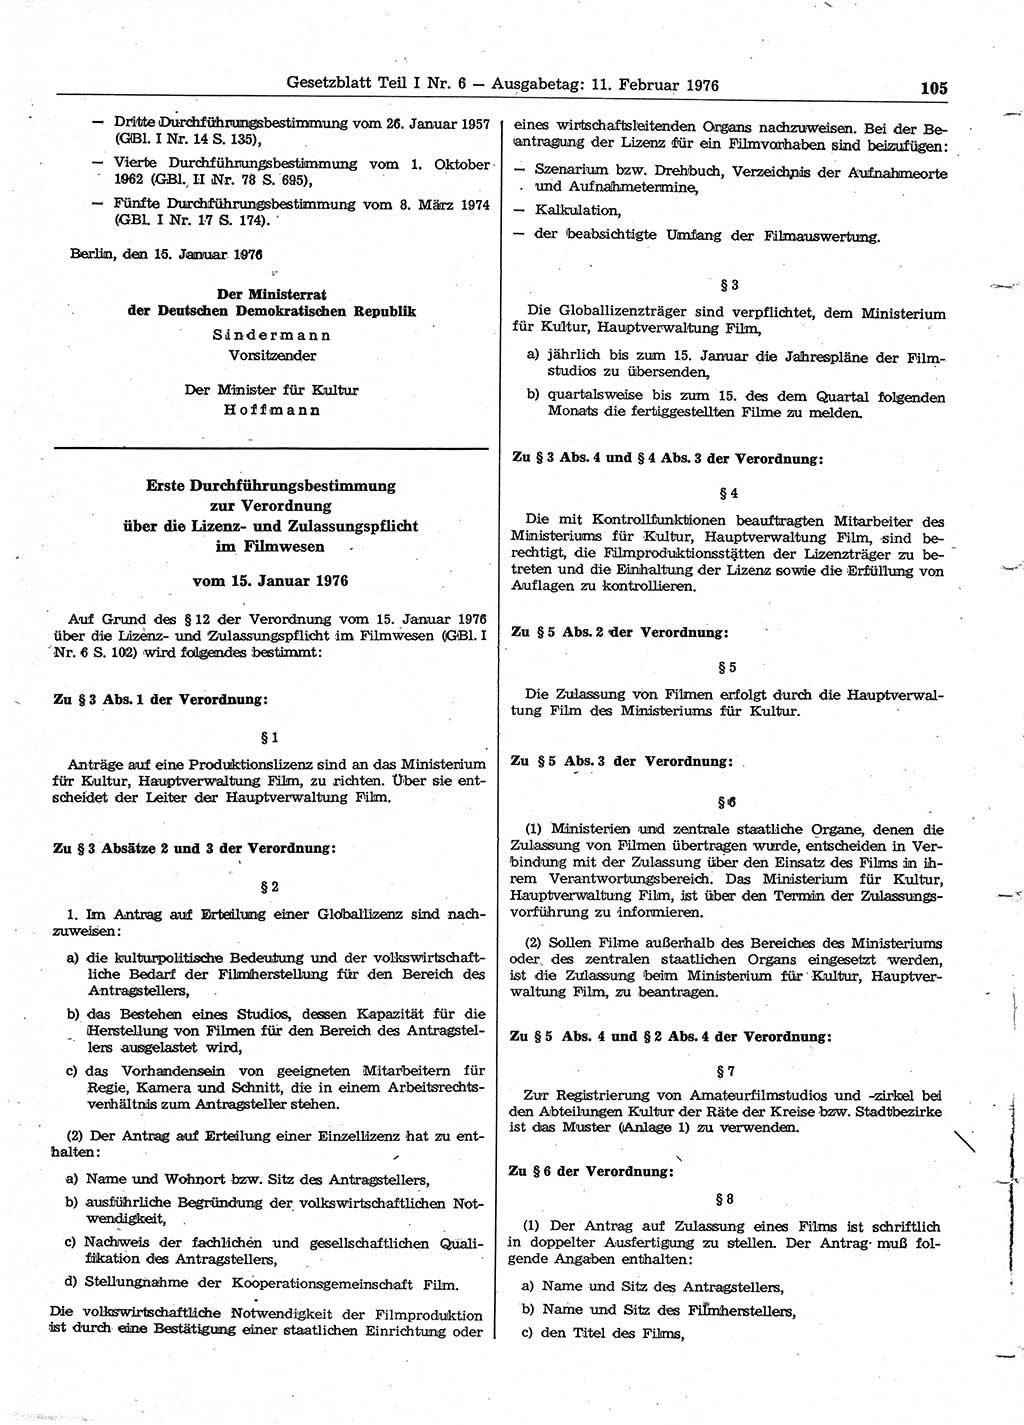 Gesetzblatt (GBl.) der Deutschen Demokratischen Republik (DDR) Teil Ⅰ 1976, Seite 105 (GBl. DDR Ⅰ 1976, S. 105)